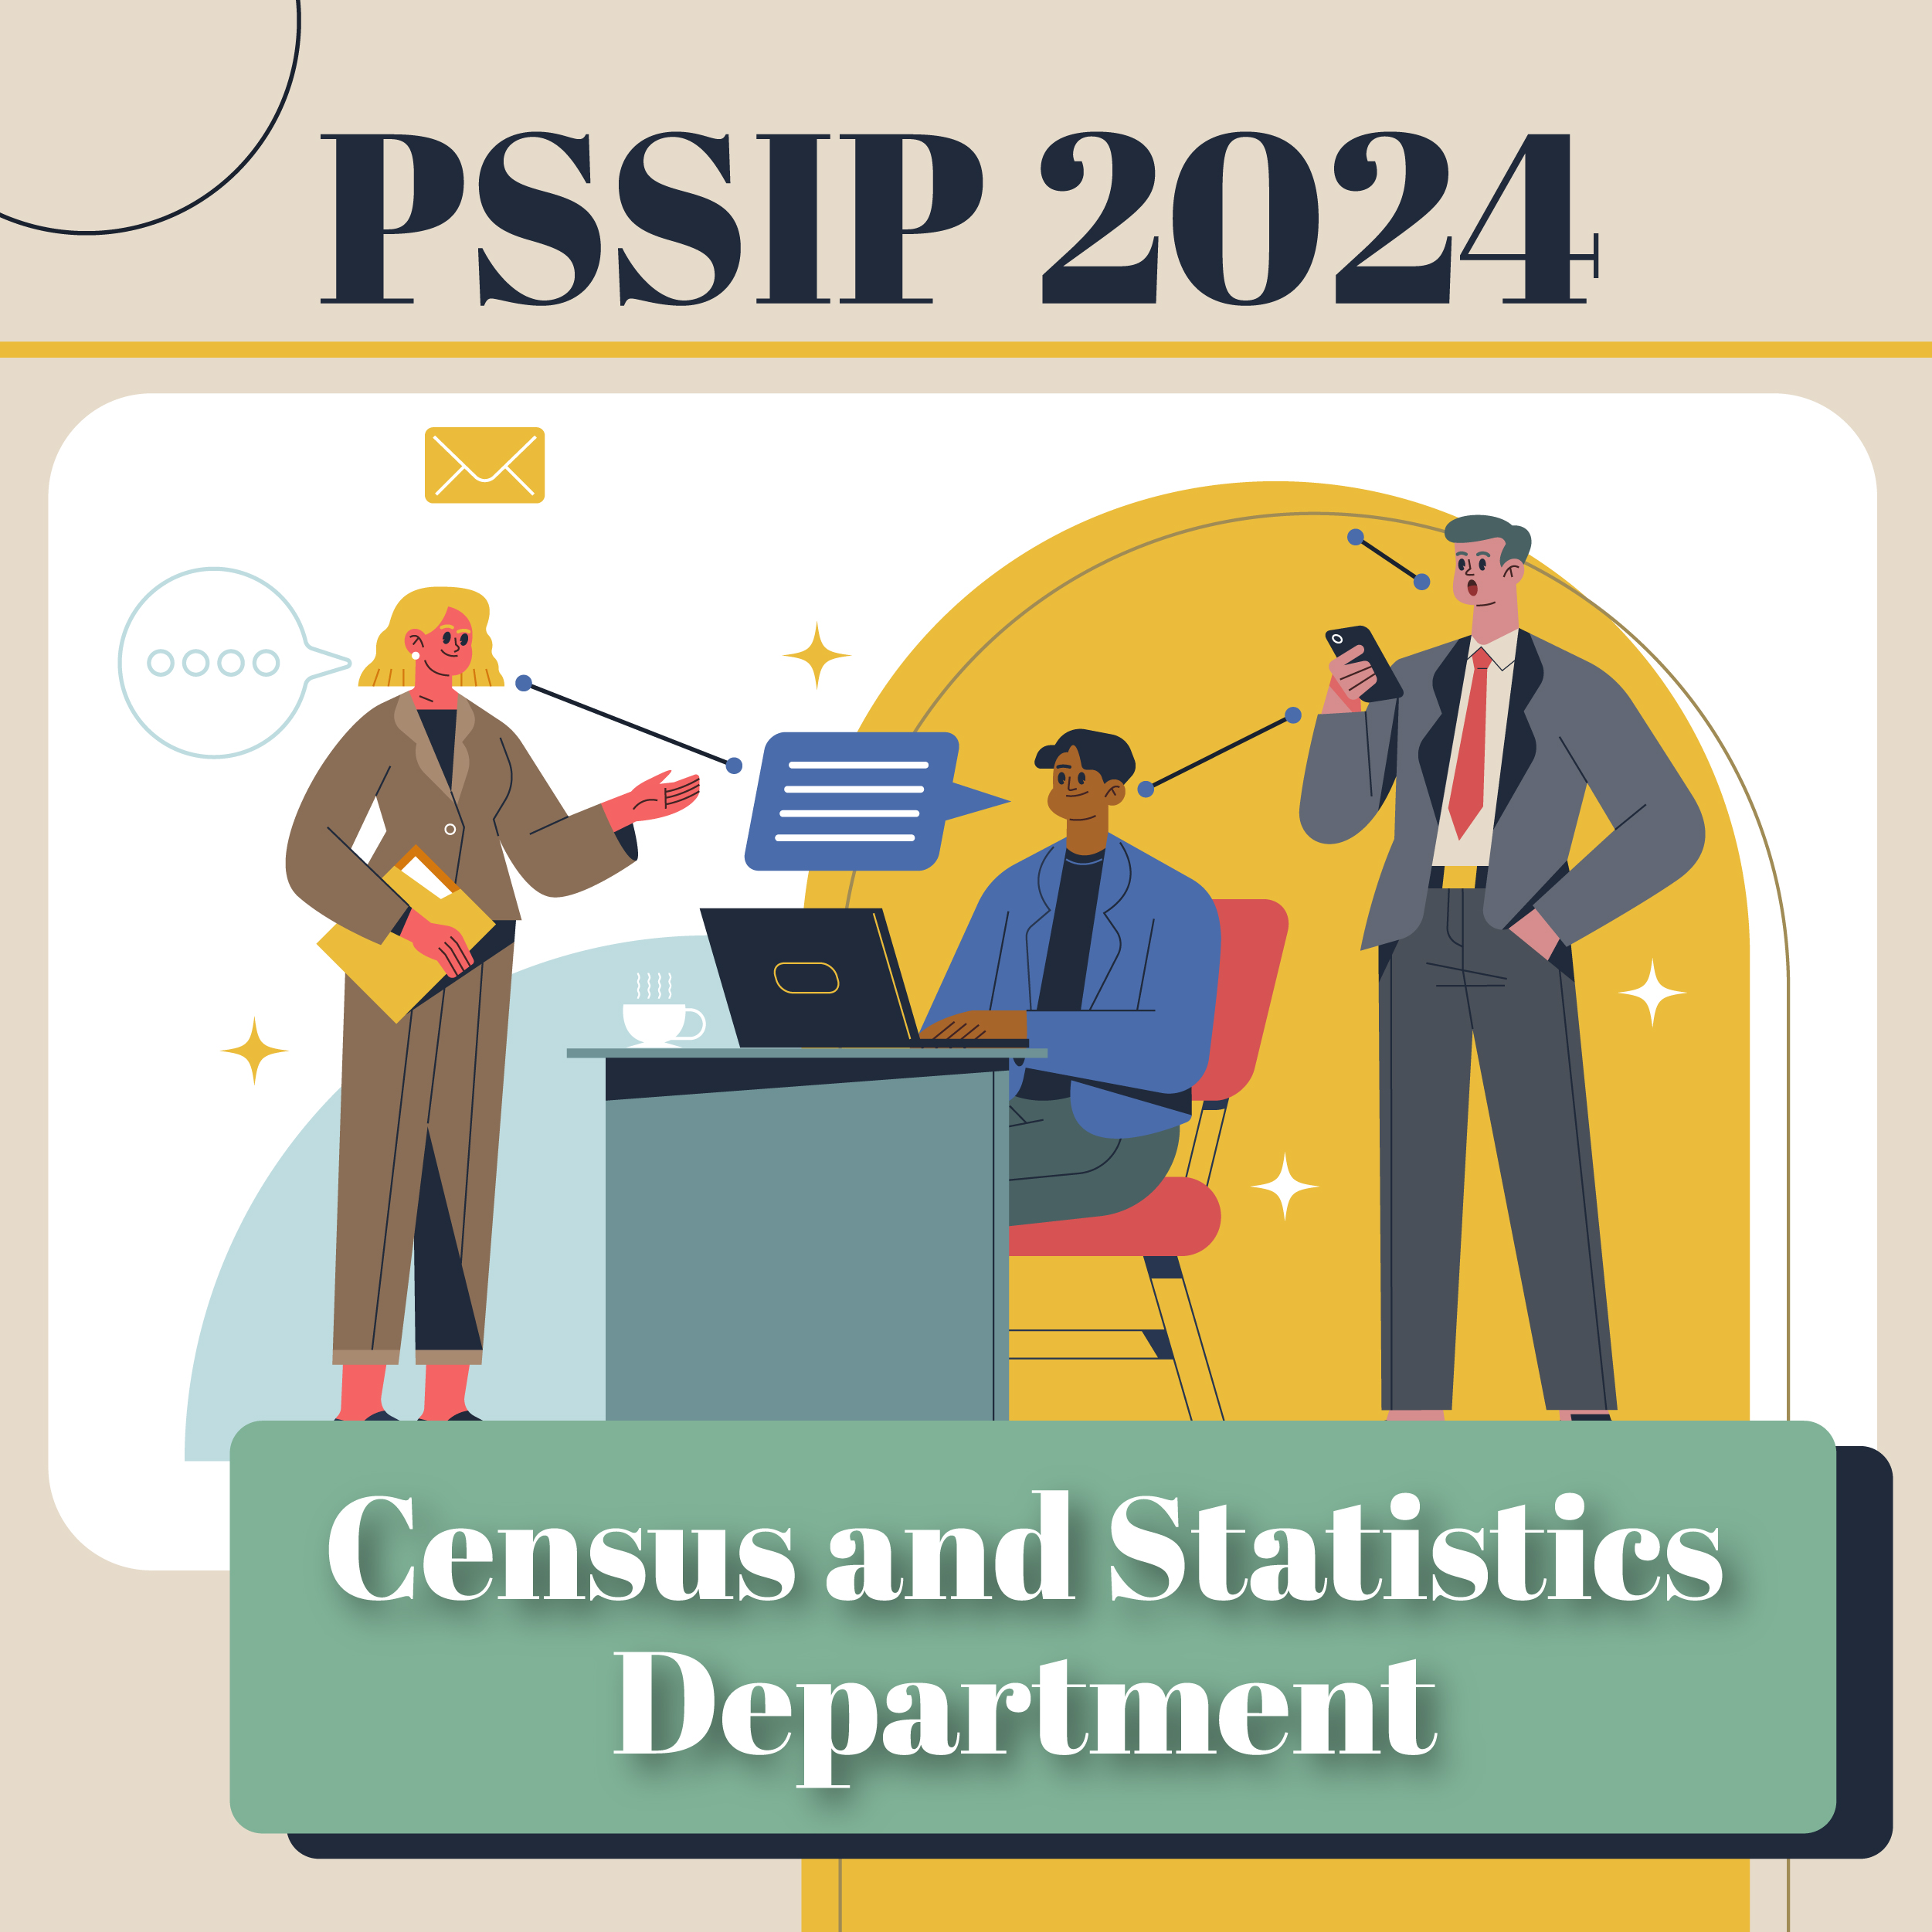 PSSIP2024 – Census and Statistics Department